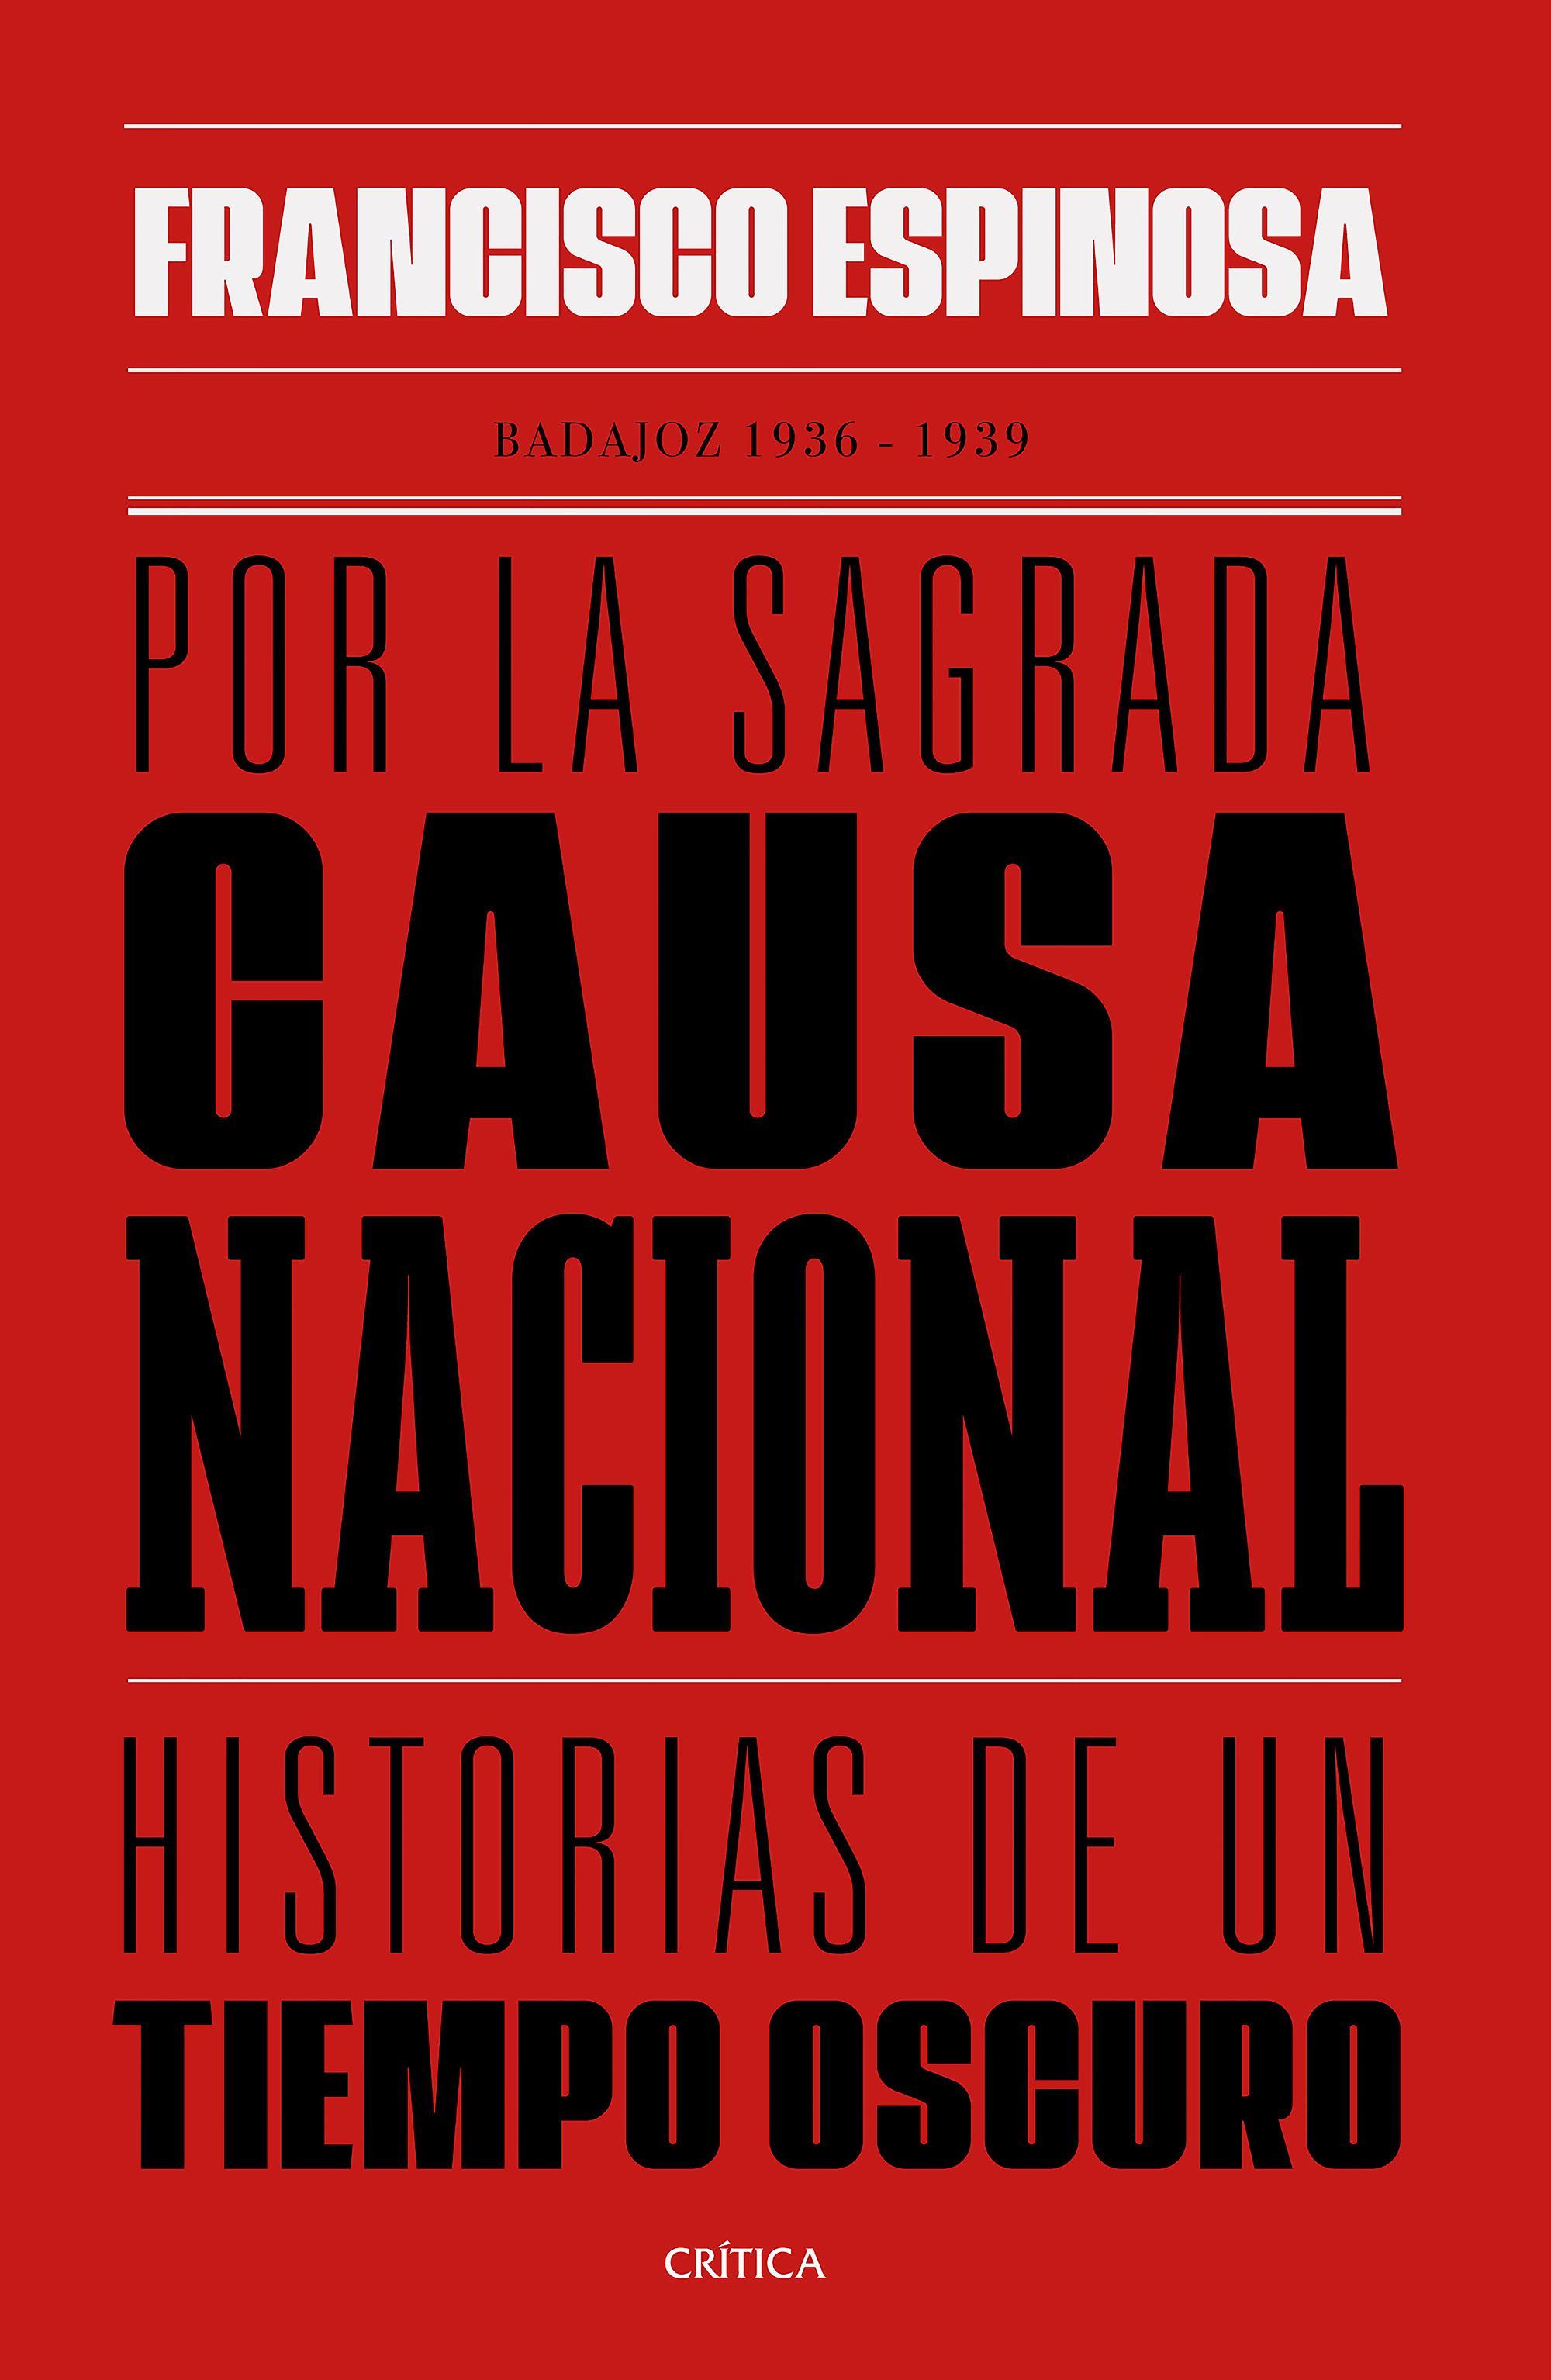 POR LA SAGRADA CAUSA NACIONAL. HISTORIAS DE UN TIEMPO OSCURO. BADAJOZ, 1936-1939